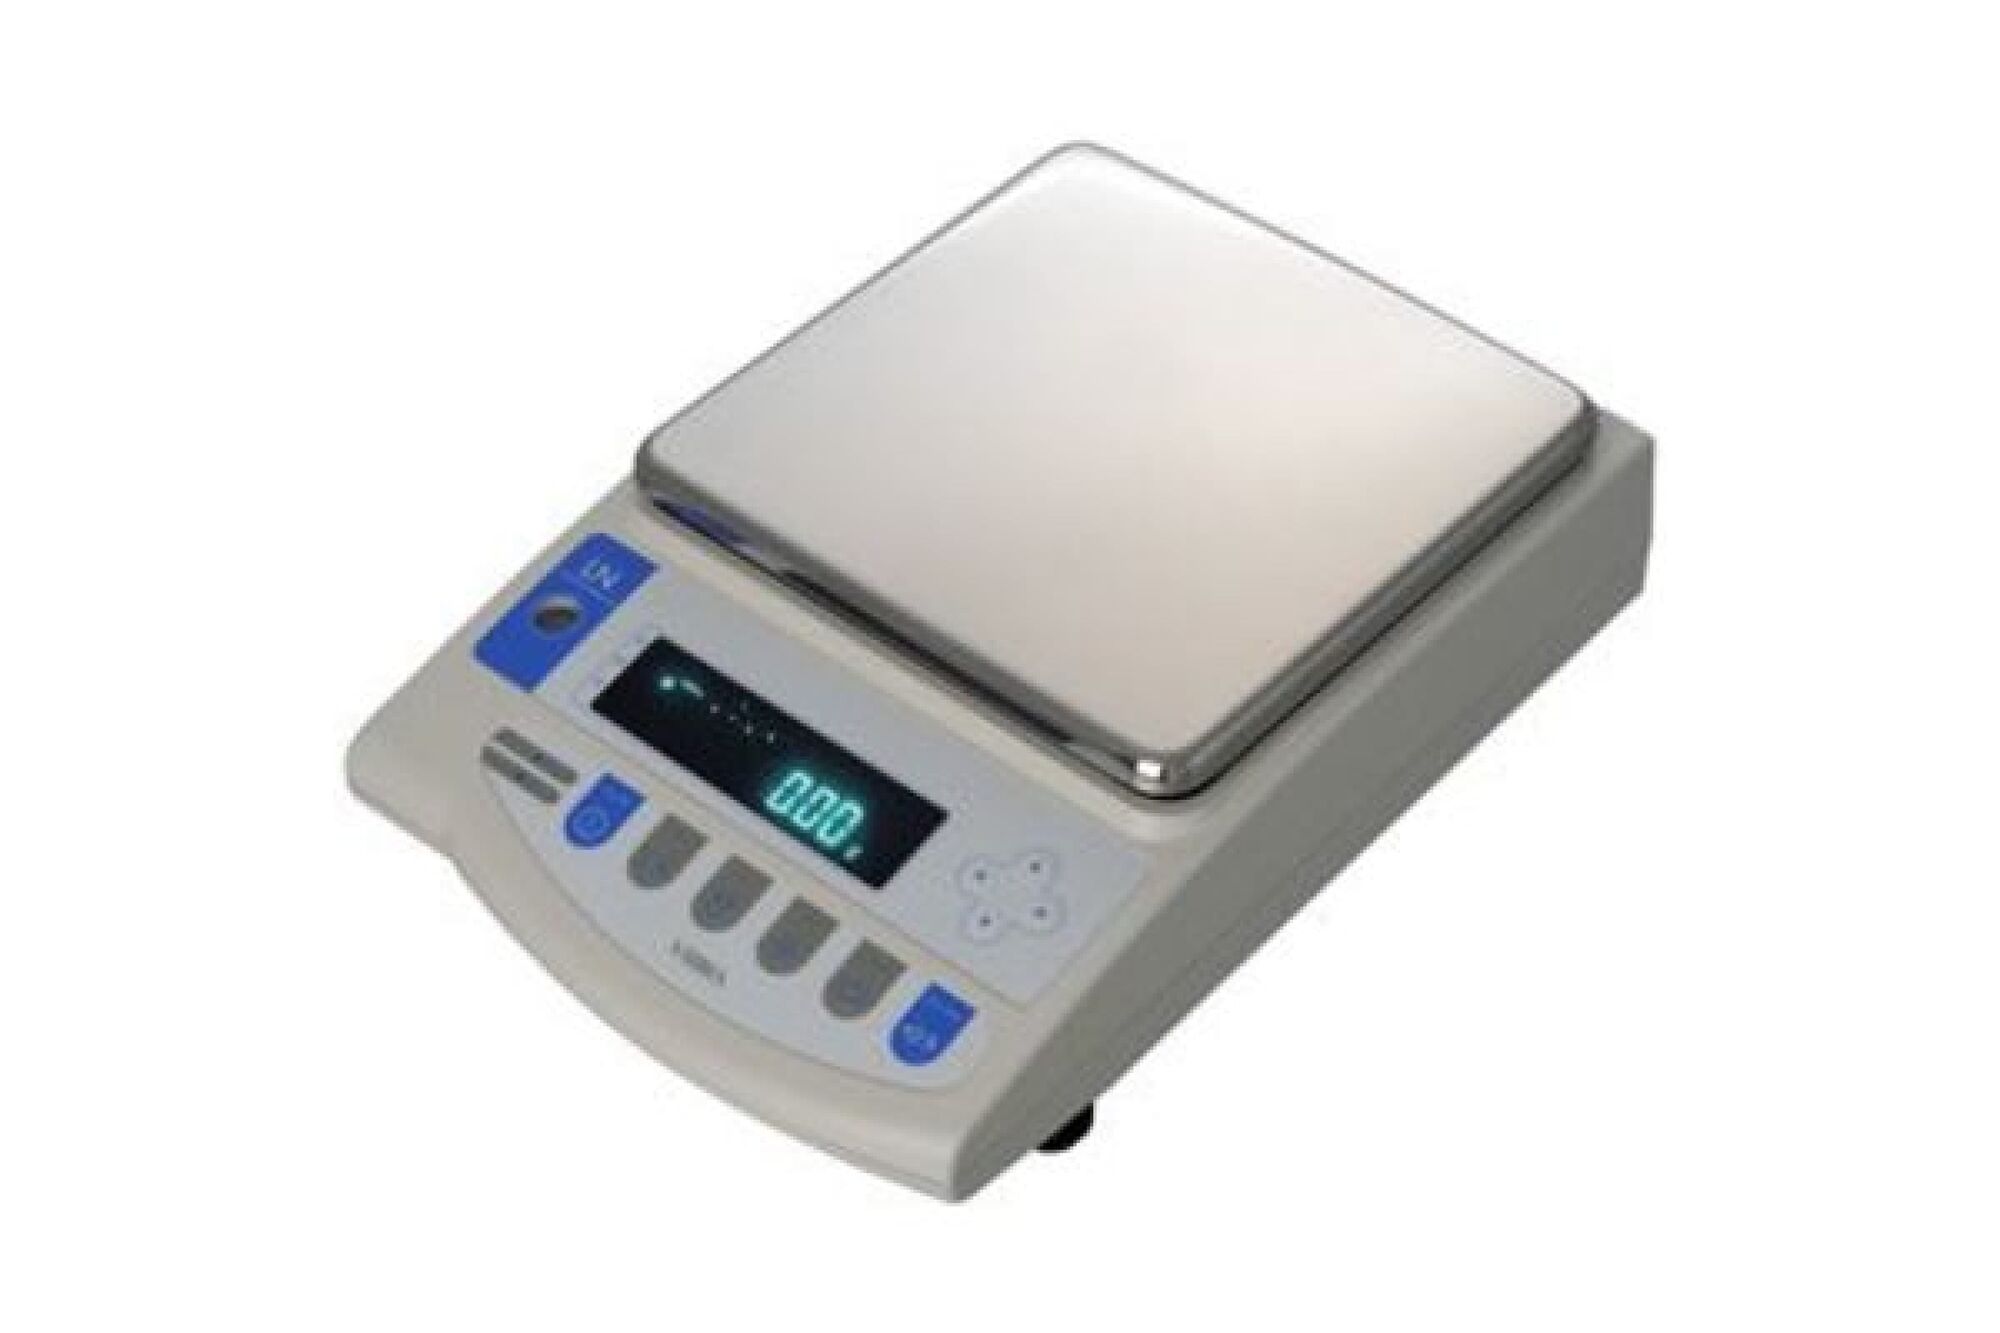 Лабораторные весы ViBRA LN 4202RCE